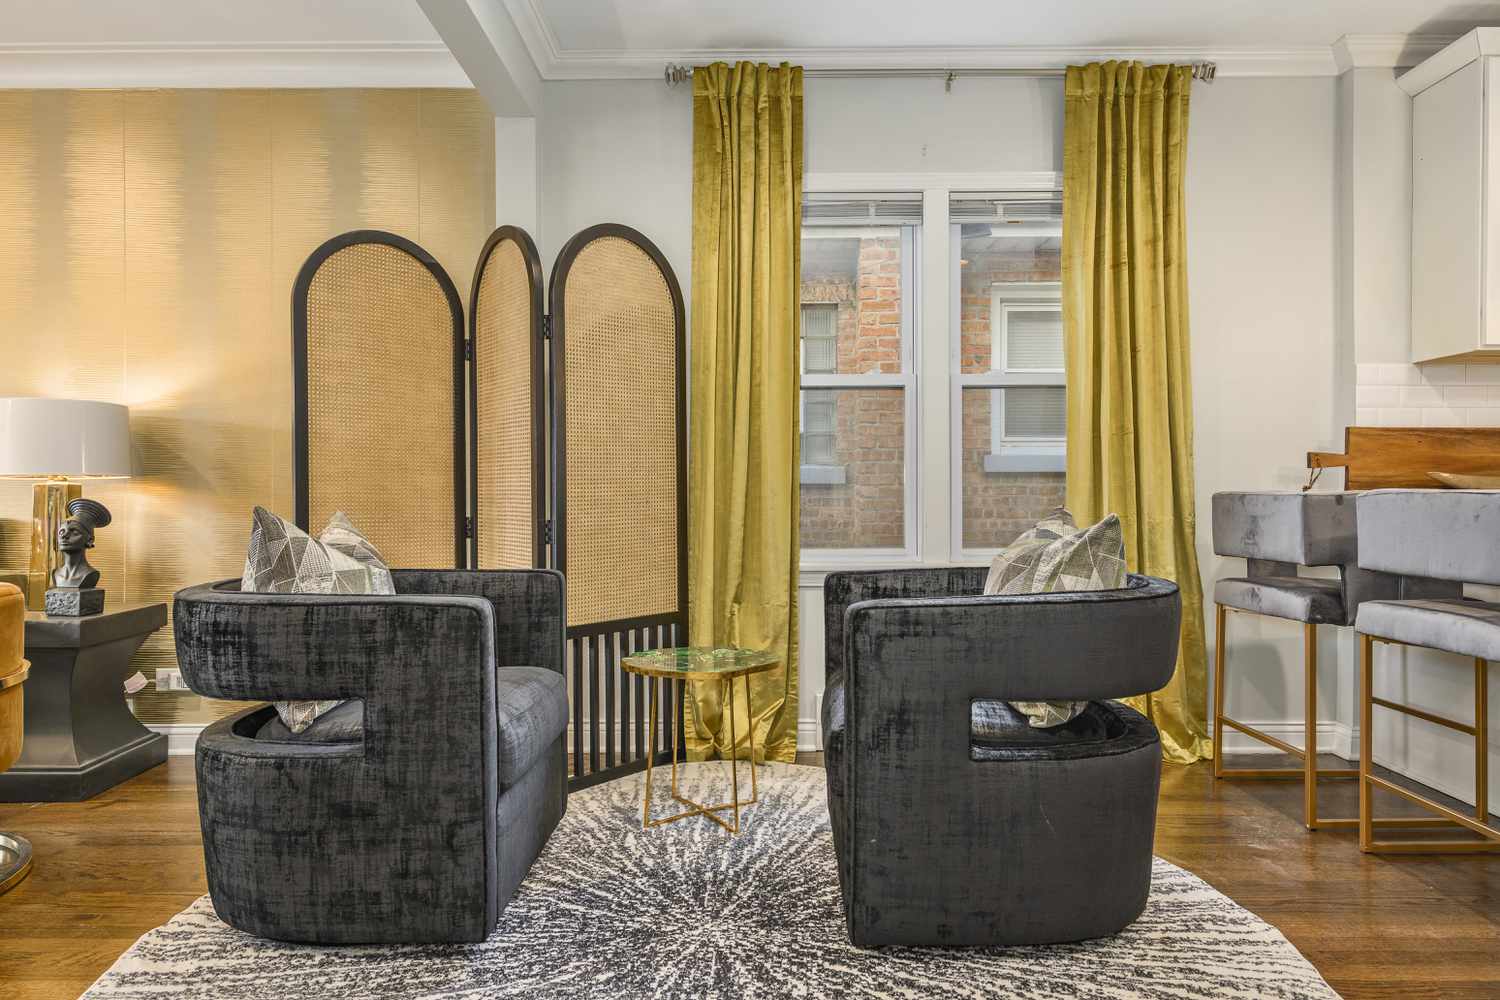 Un coin salon avec un séparateur de pièce en rotin, un rideau jaune qui atteint les plafonds, et des chaises noires